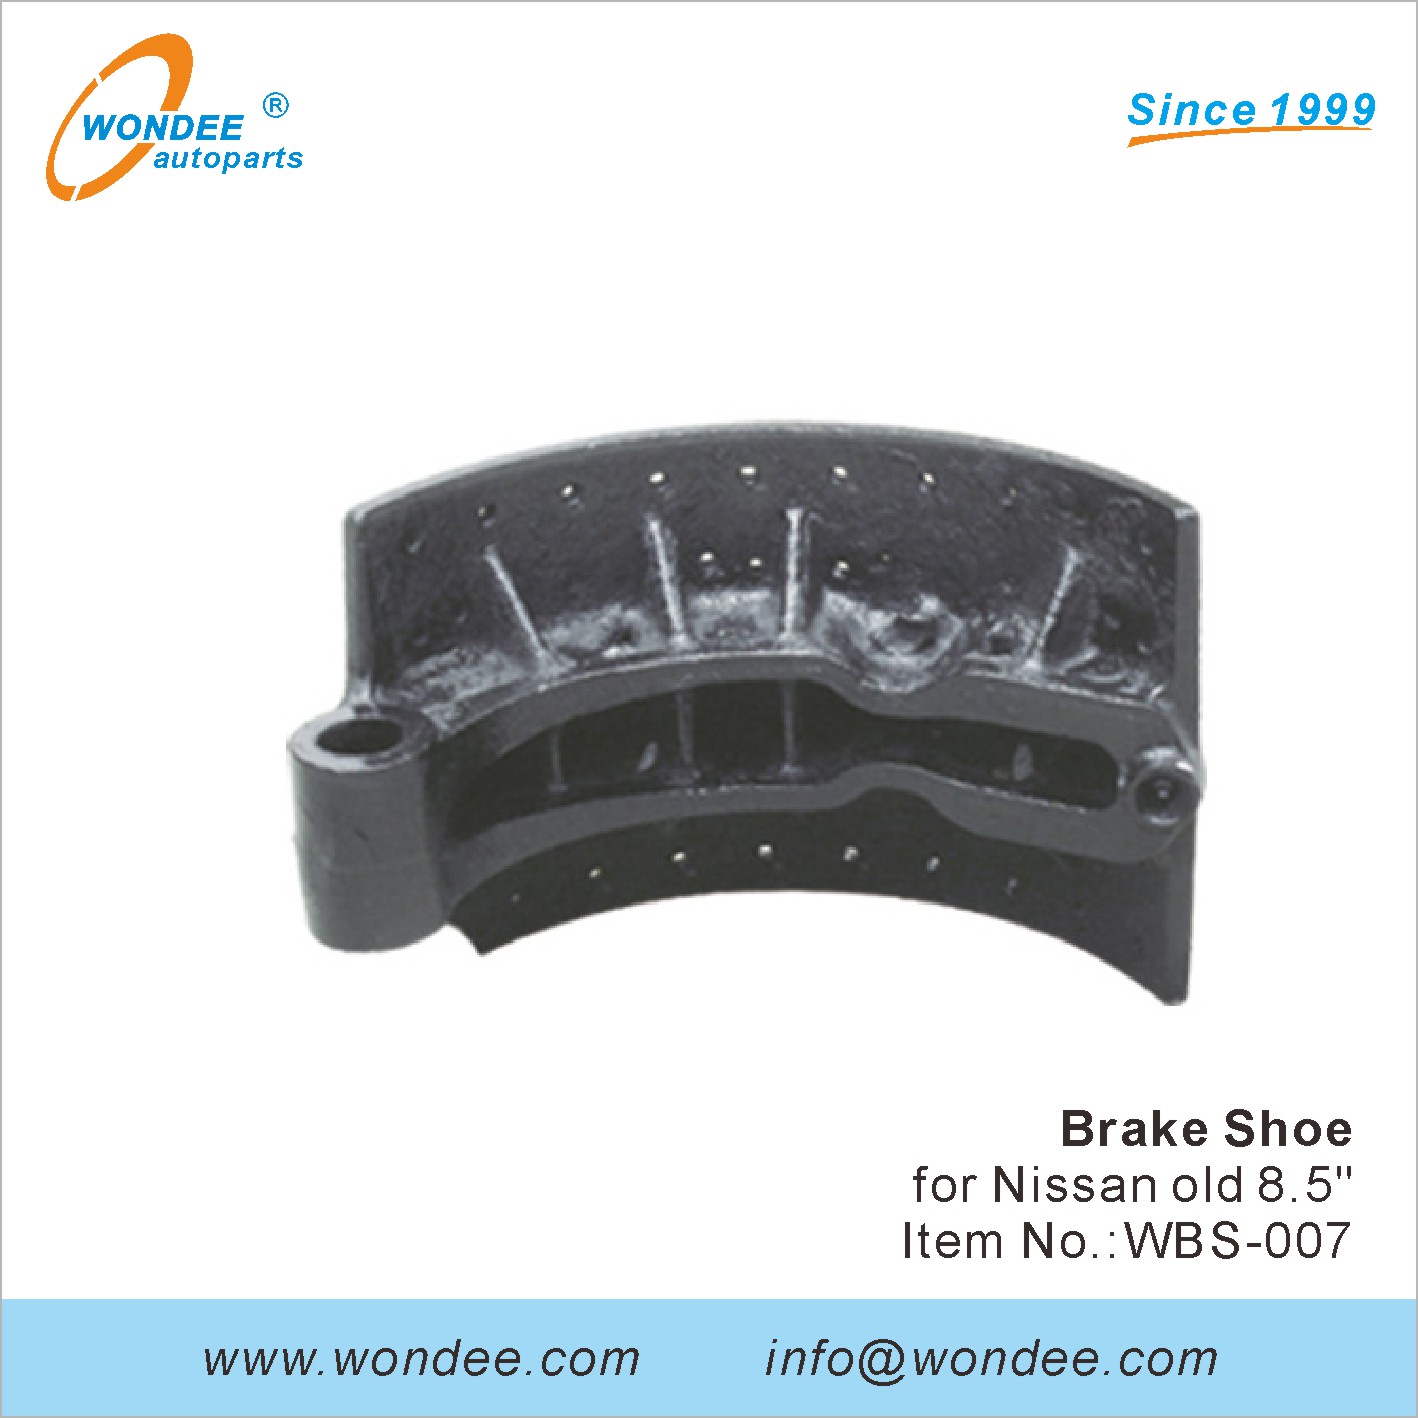 WONDEE brake shoe (7)